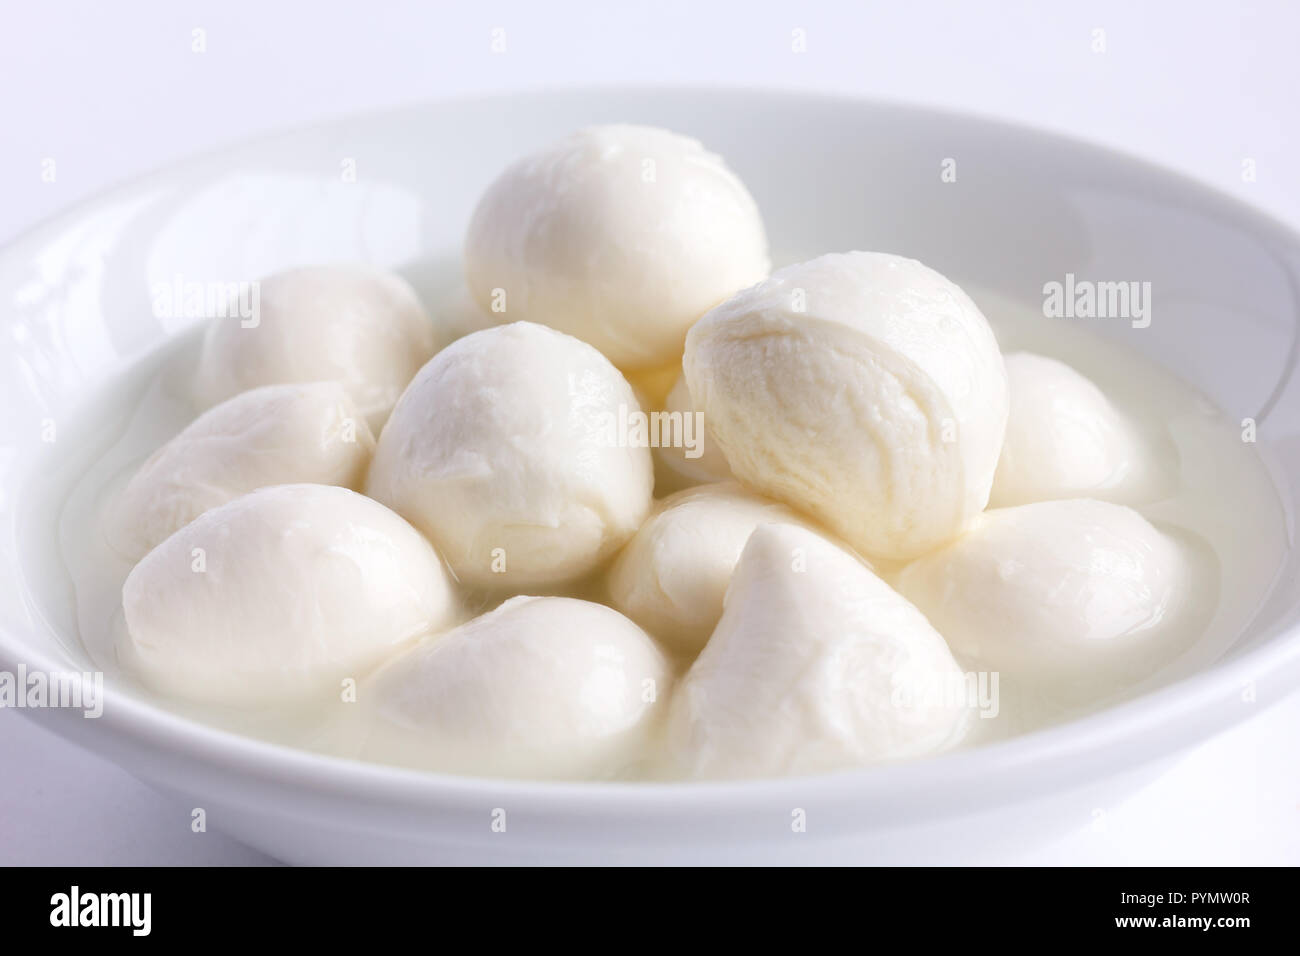 Small white mozzarella balls in a white dish with liquid. Stock Photo